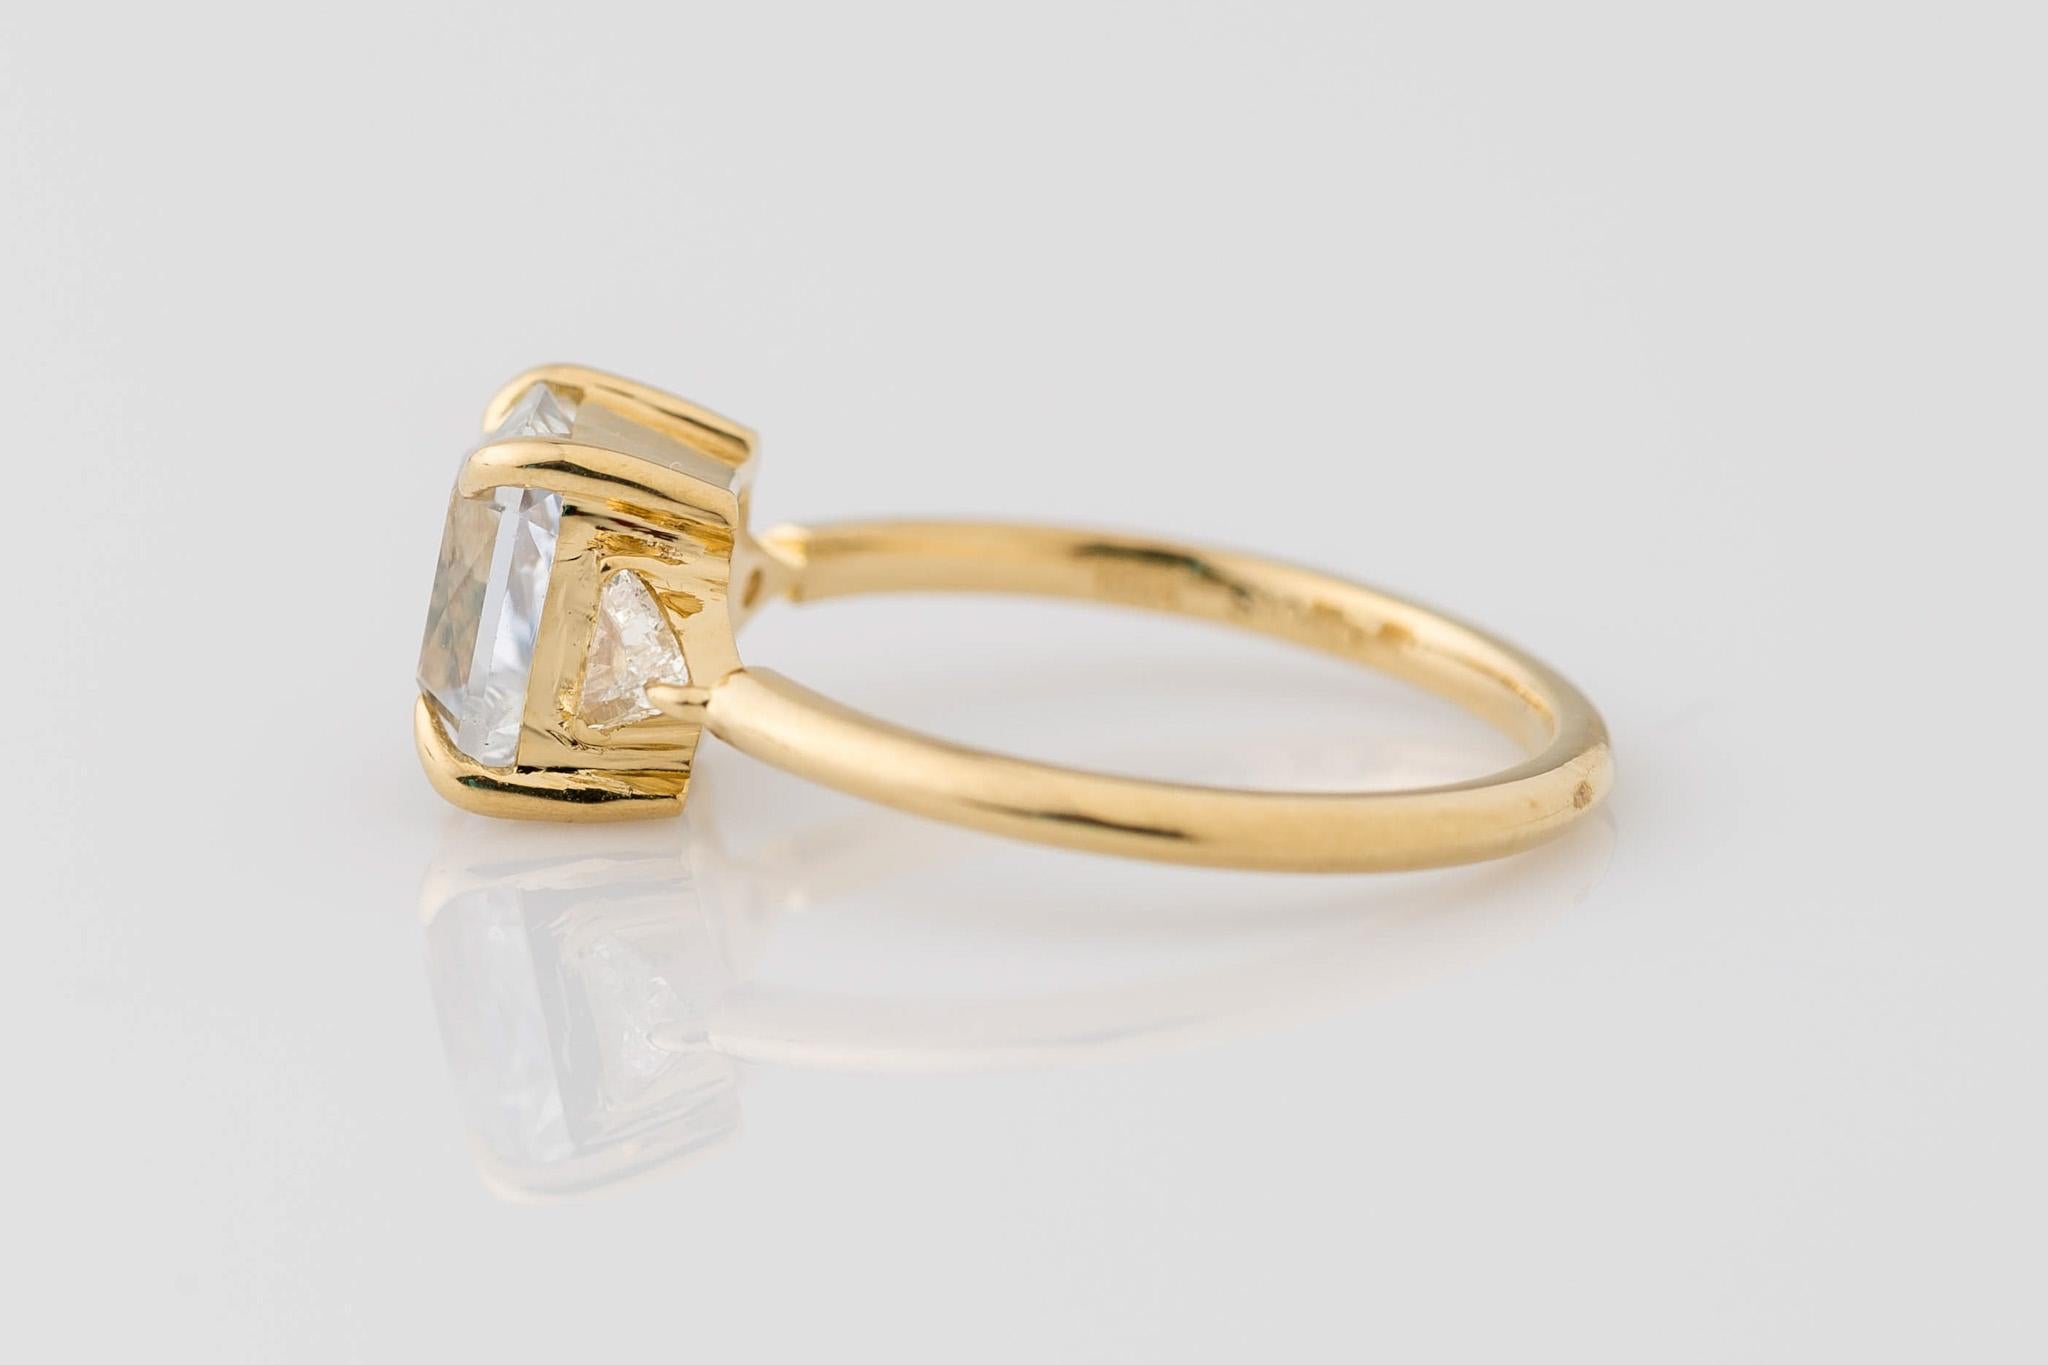 Feiern Sie Ihre Liebe mit unserem exquisiten Verlobungsring aus 18 Karat Gelbgold mit GIA-Zertifizierung und weißem Saphir im Strahlenschliff, der mit Billionen von Diamanten verziert ist. Das Herzstück ist ein GIA-zertifizierter weißer Saphir von